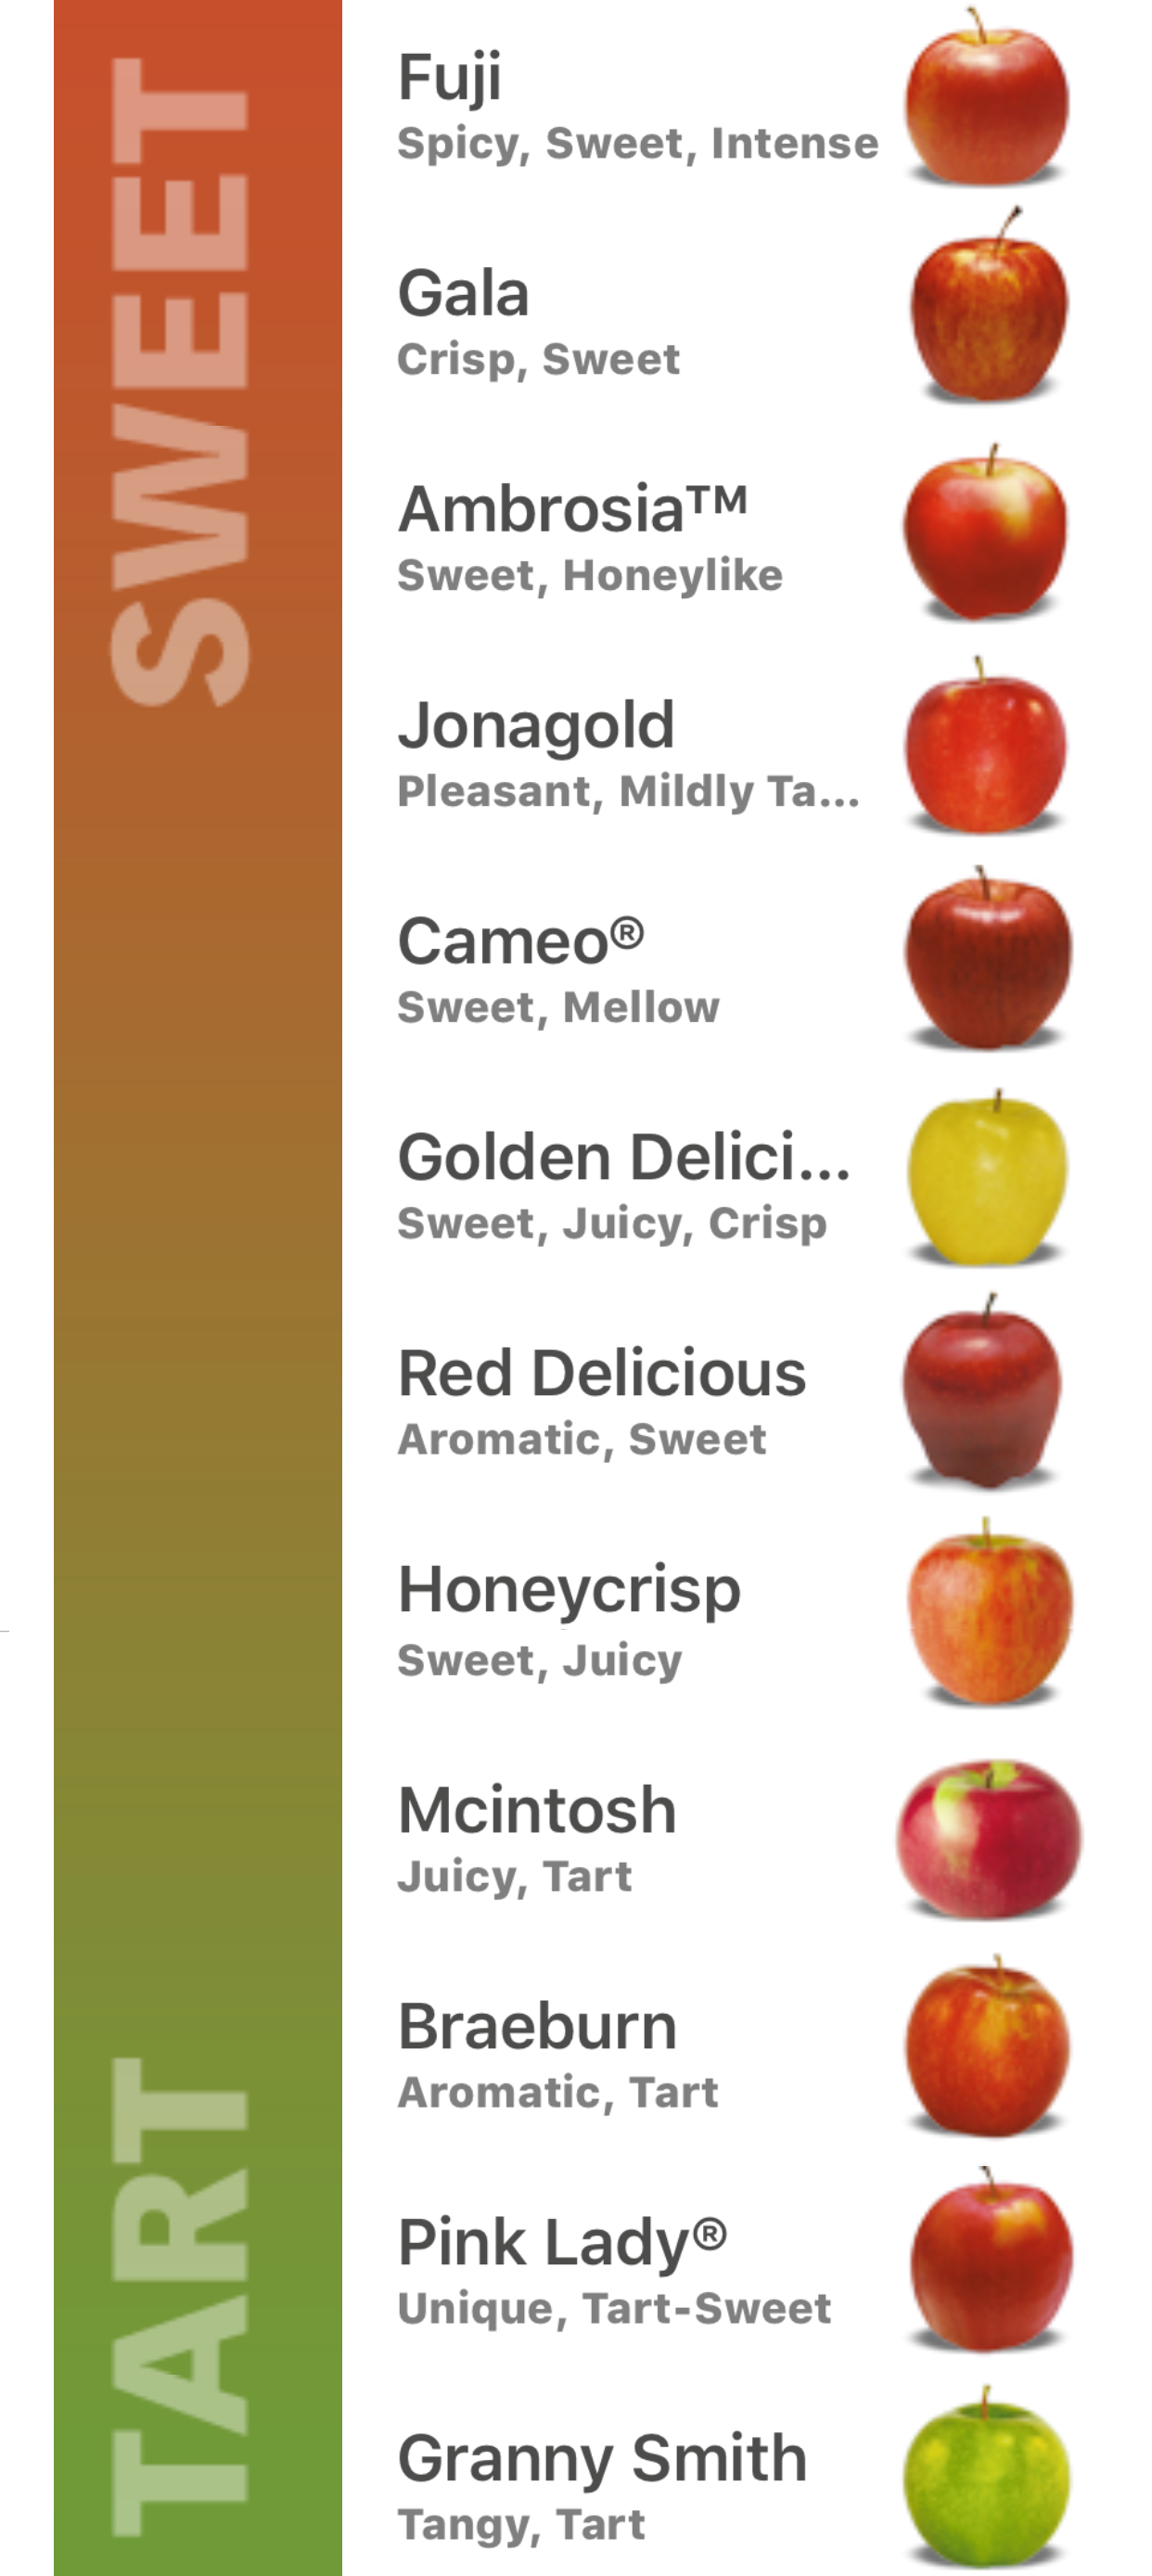 Apple Varieties Comparison Chart